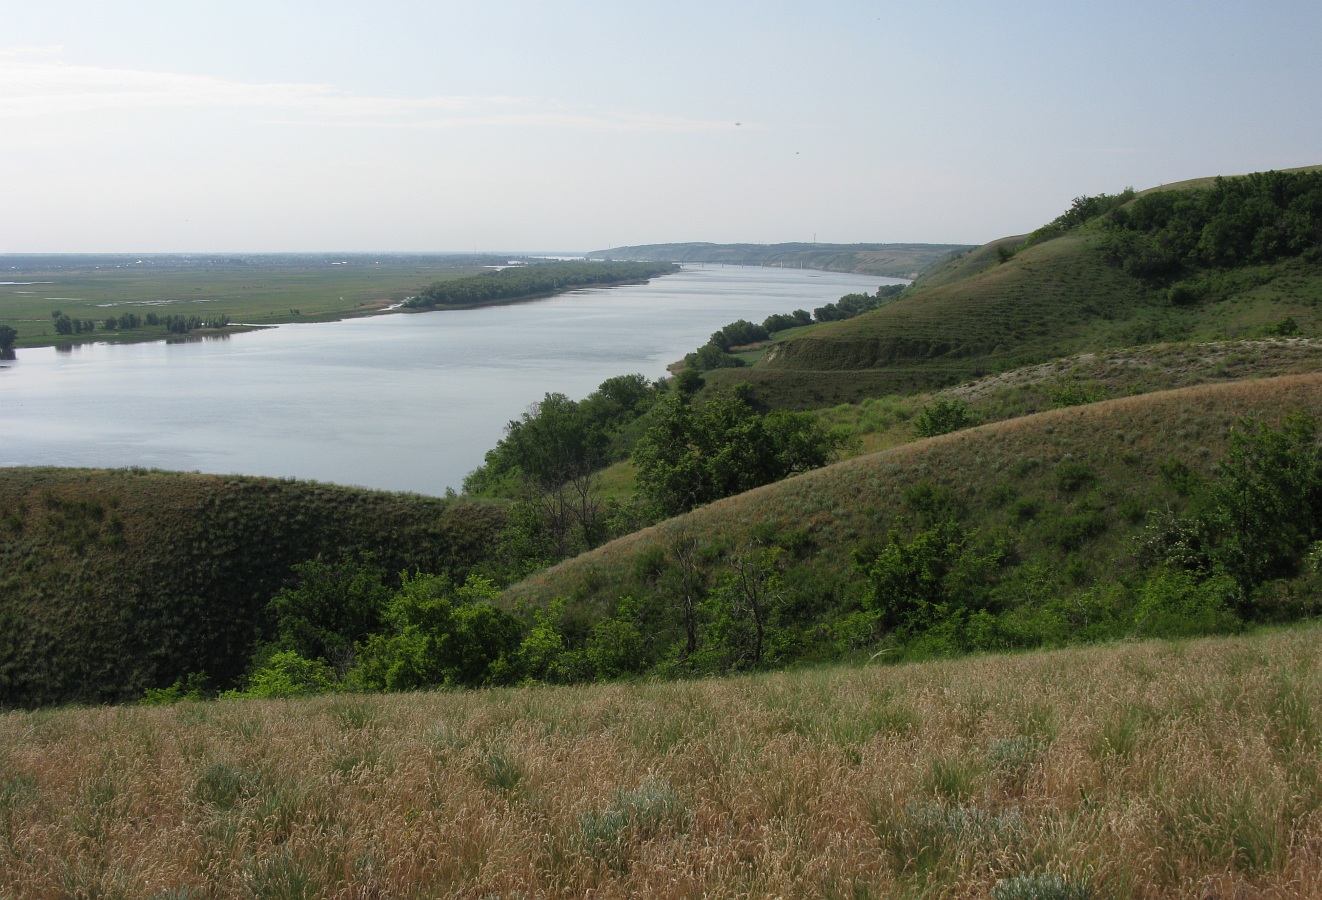 Калач-на-Дону, image of landscape/habitat.